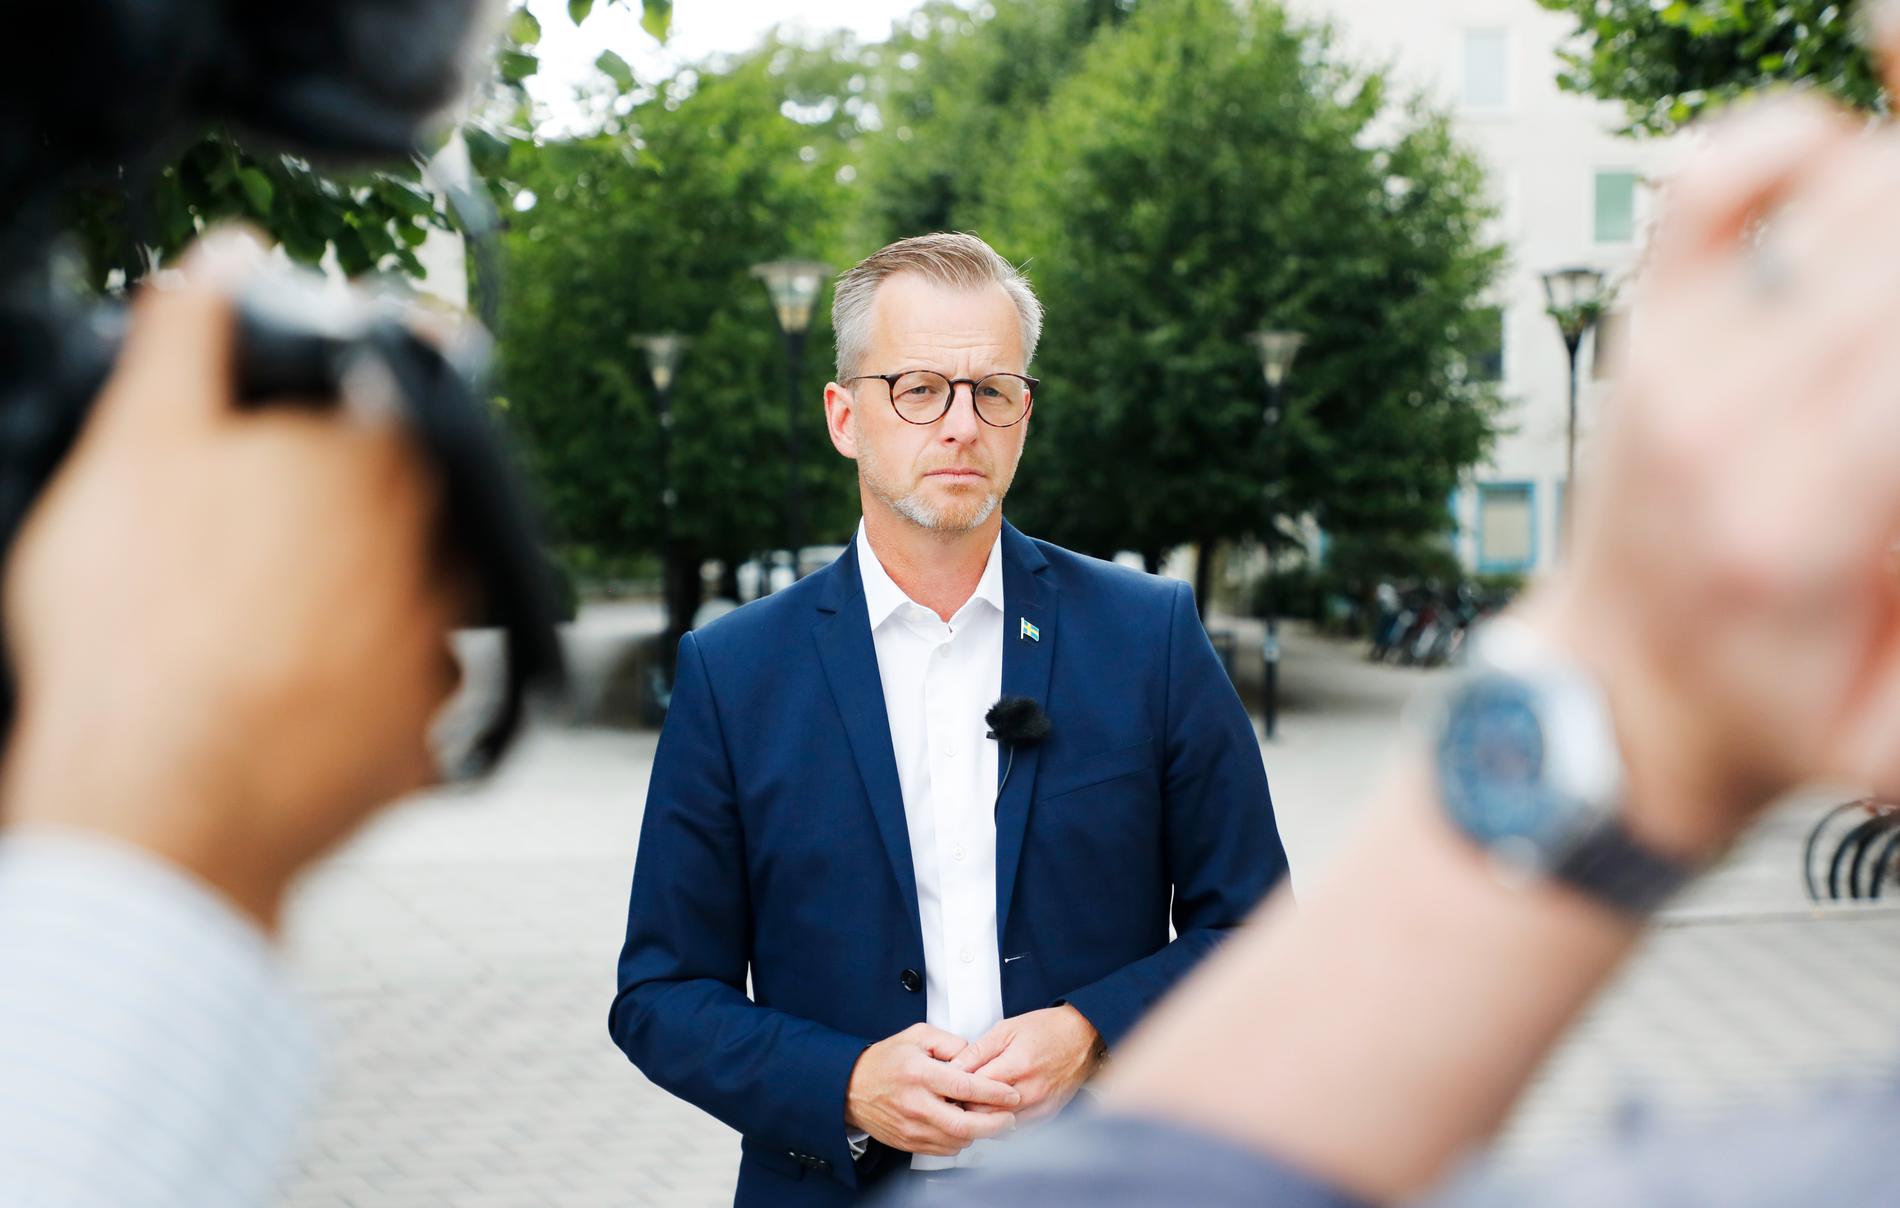 Inrikesminister Mikael Damberg möter pressen efter att två barn skottskadats i Huddinge söder om Stockholm.